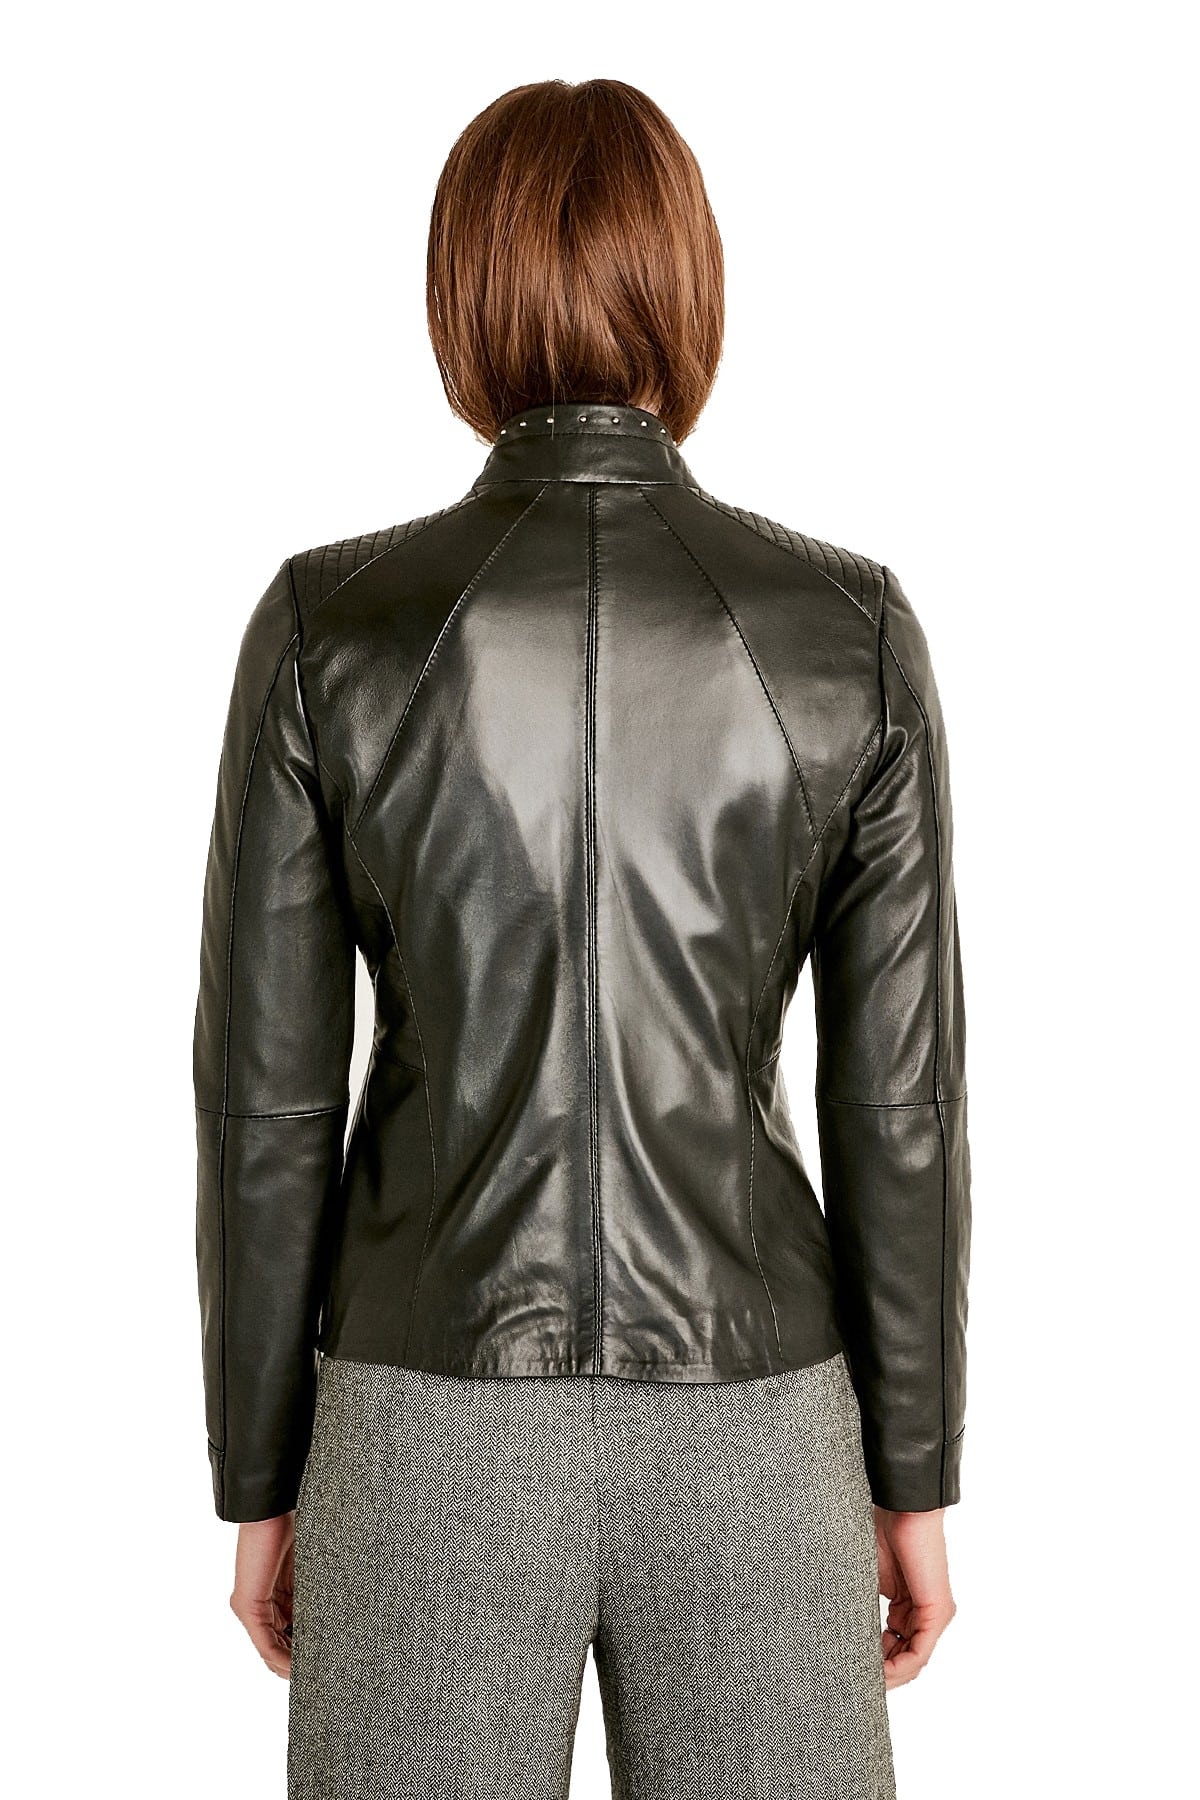 Womens Shiny Leather Jacket - Ladies Fashion Patent Leather Jacket